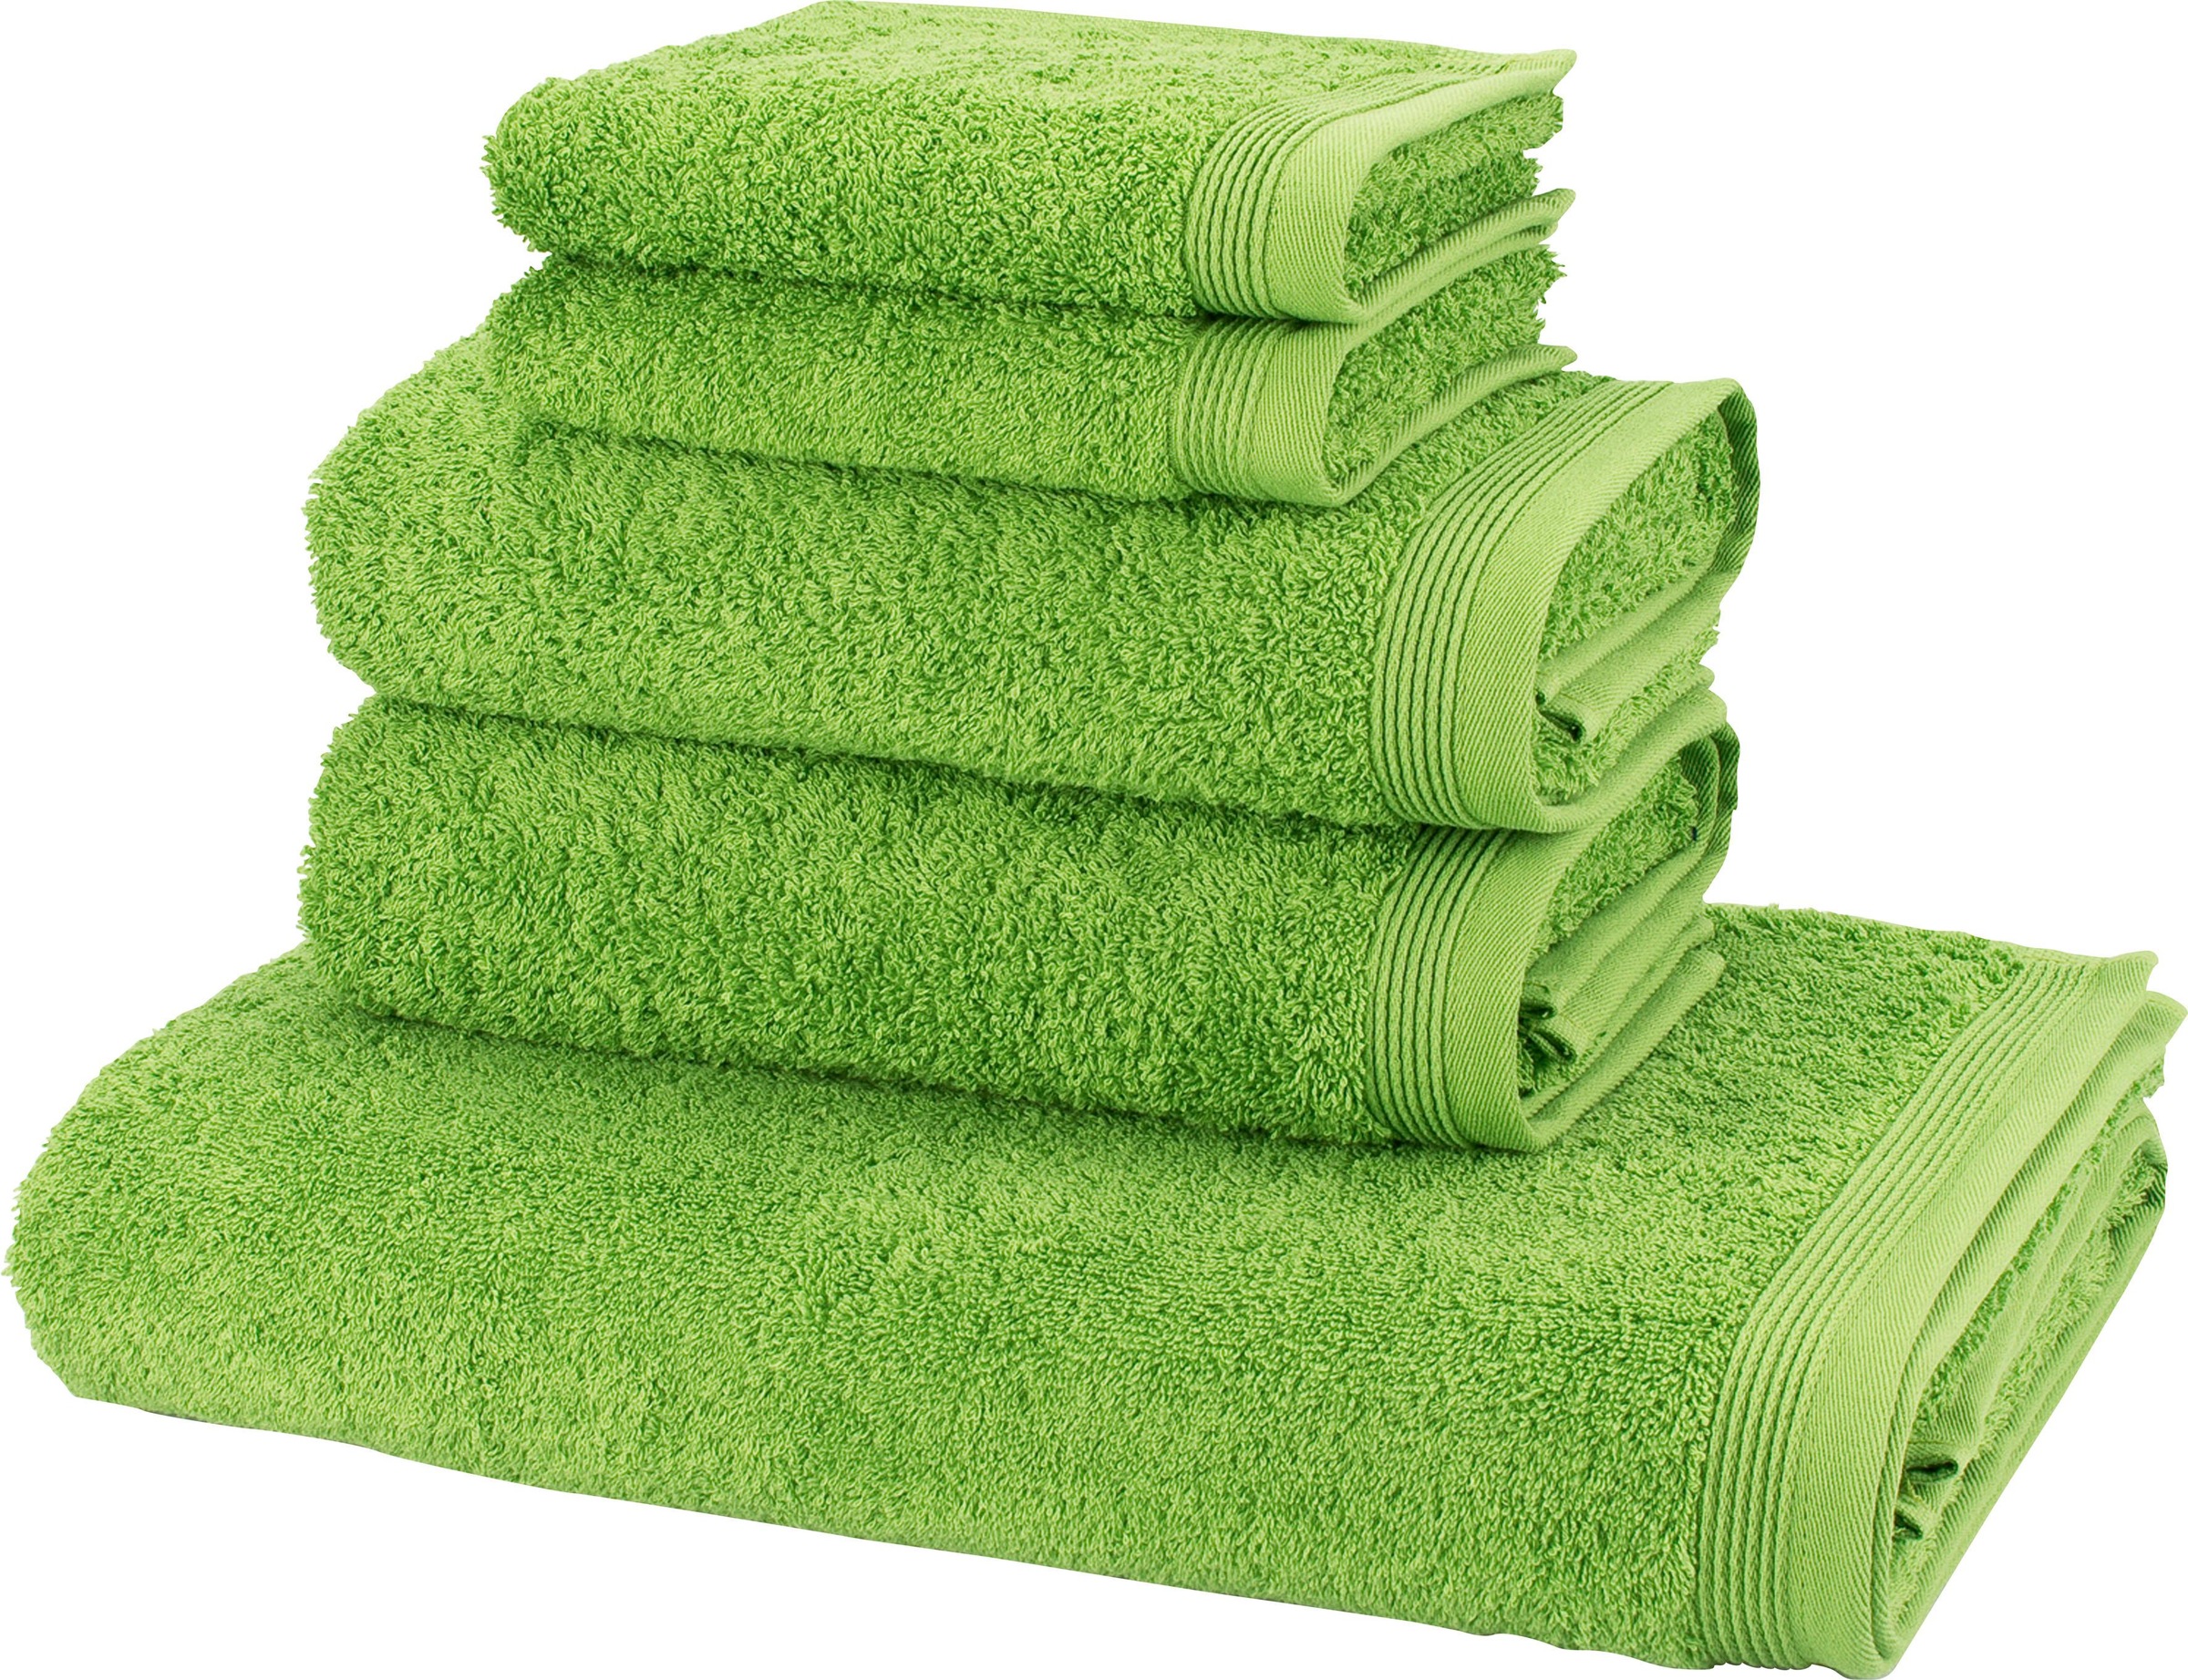 Handtuchsets in Grün Preisvergleich | Moebel 24